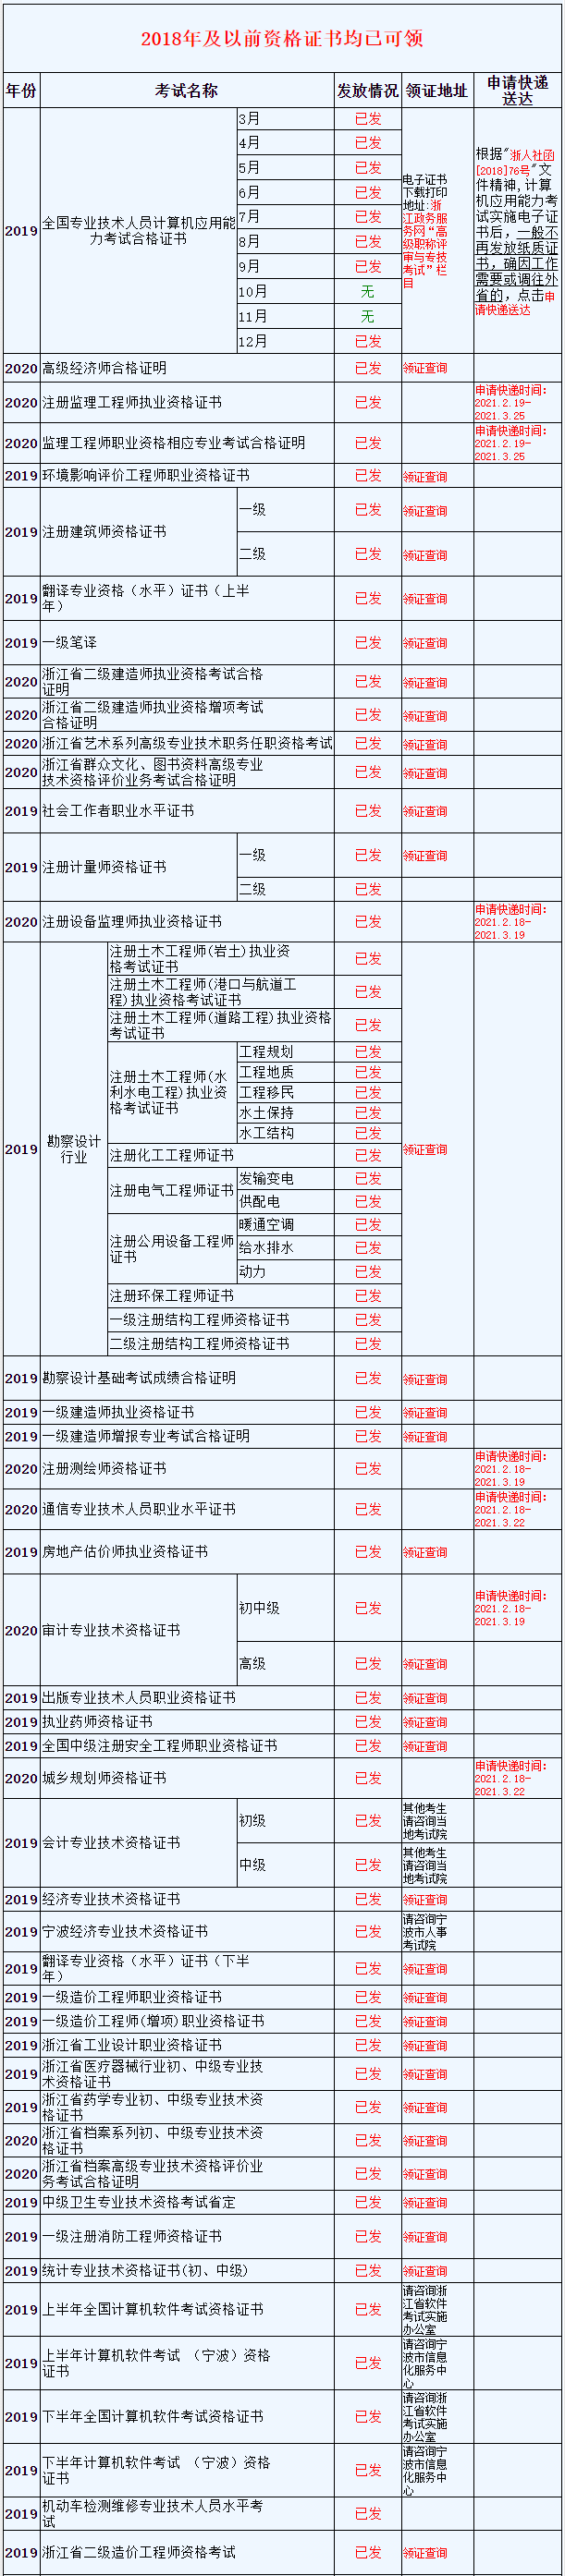 2020年浙江监理工程师合格证书邮寄申请时间